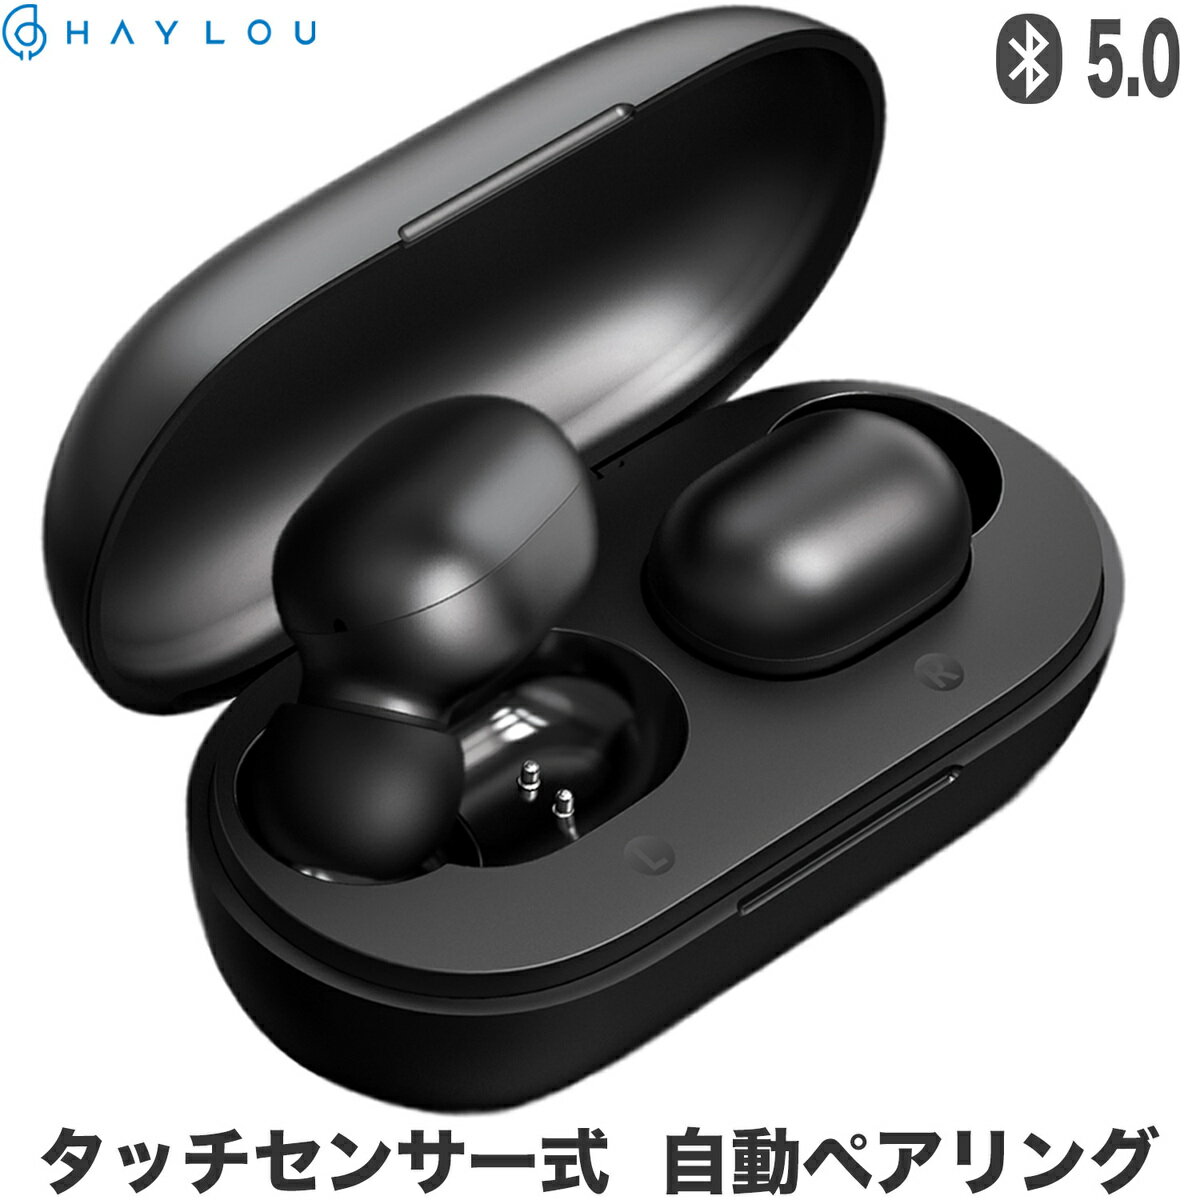 【楽天】QCY ワイヤレスイヤホン Bluetooth5.0 カナル型 完全ワイヤレスイヤホン 高音質 ブルートゥース イヤホン